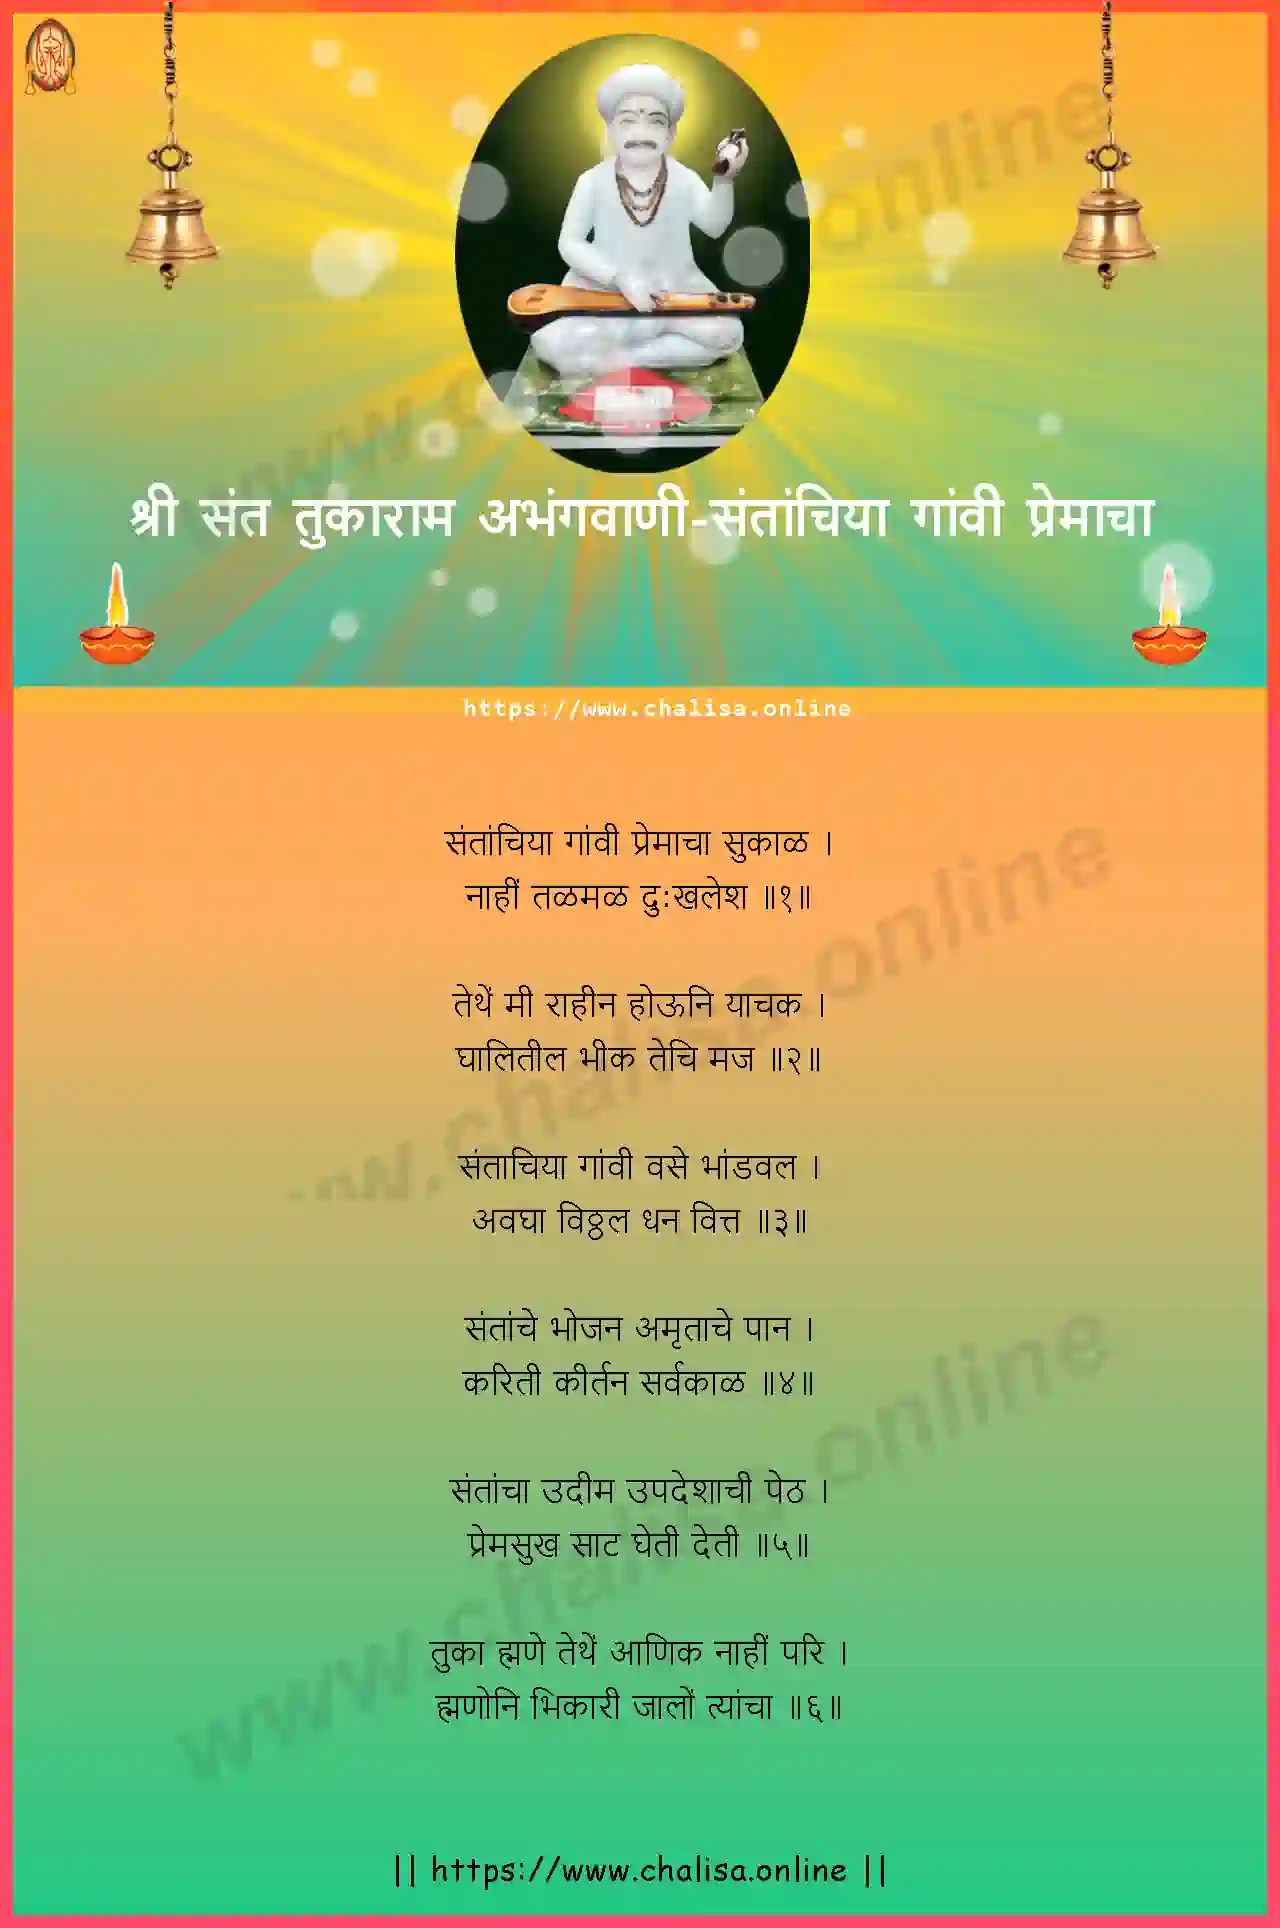 santanchiya-gavi-premacha-shri-sant-tukaram-abhang-marathi-lyrics-download